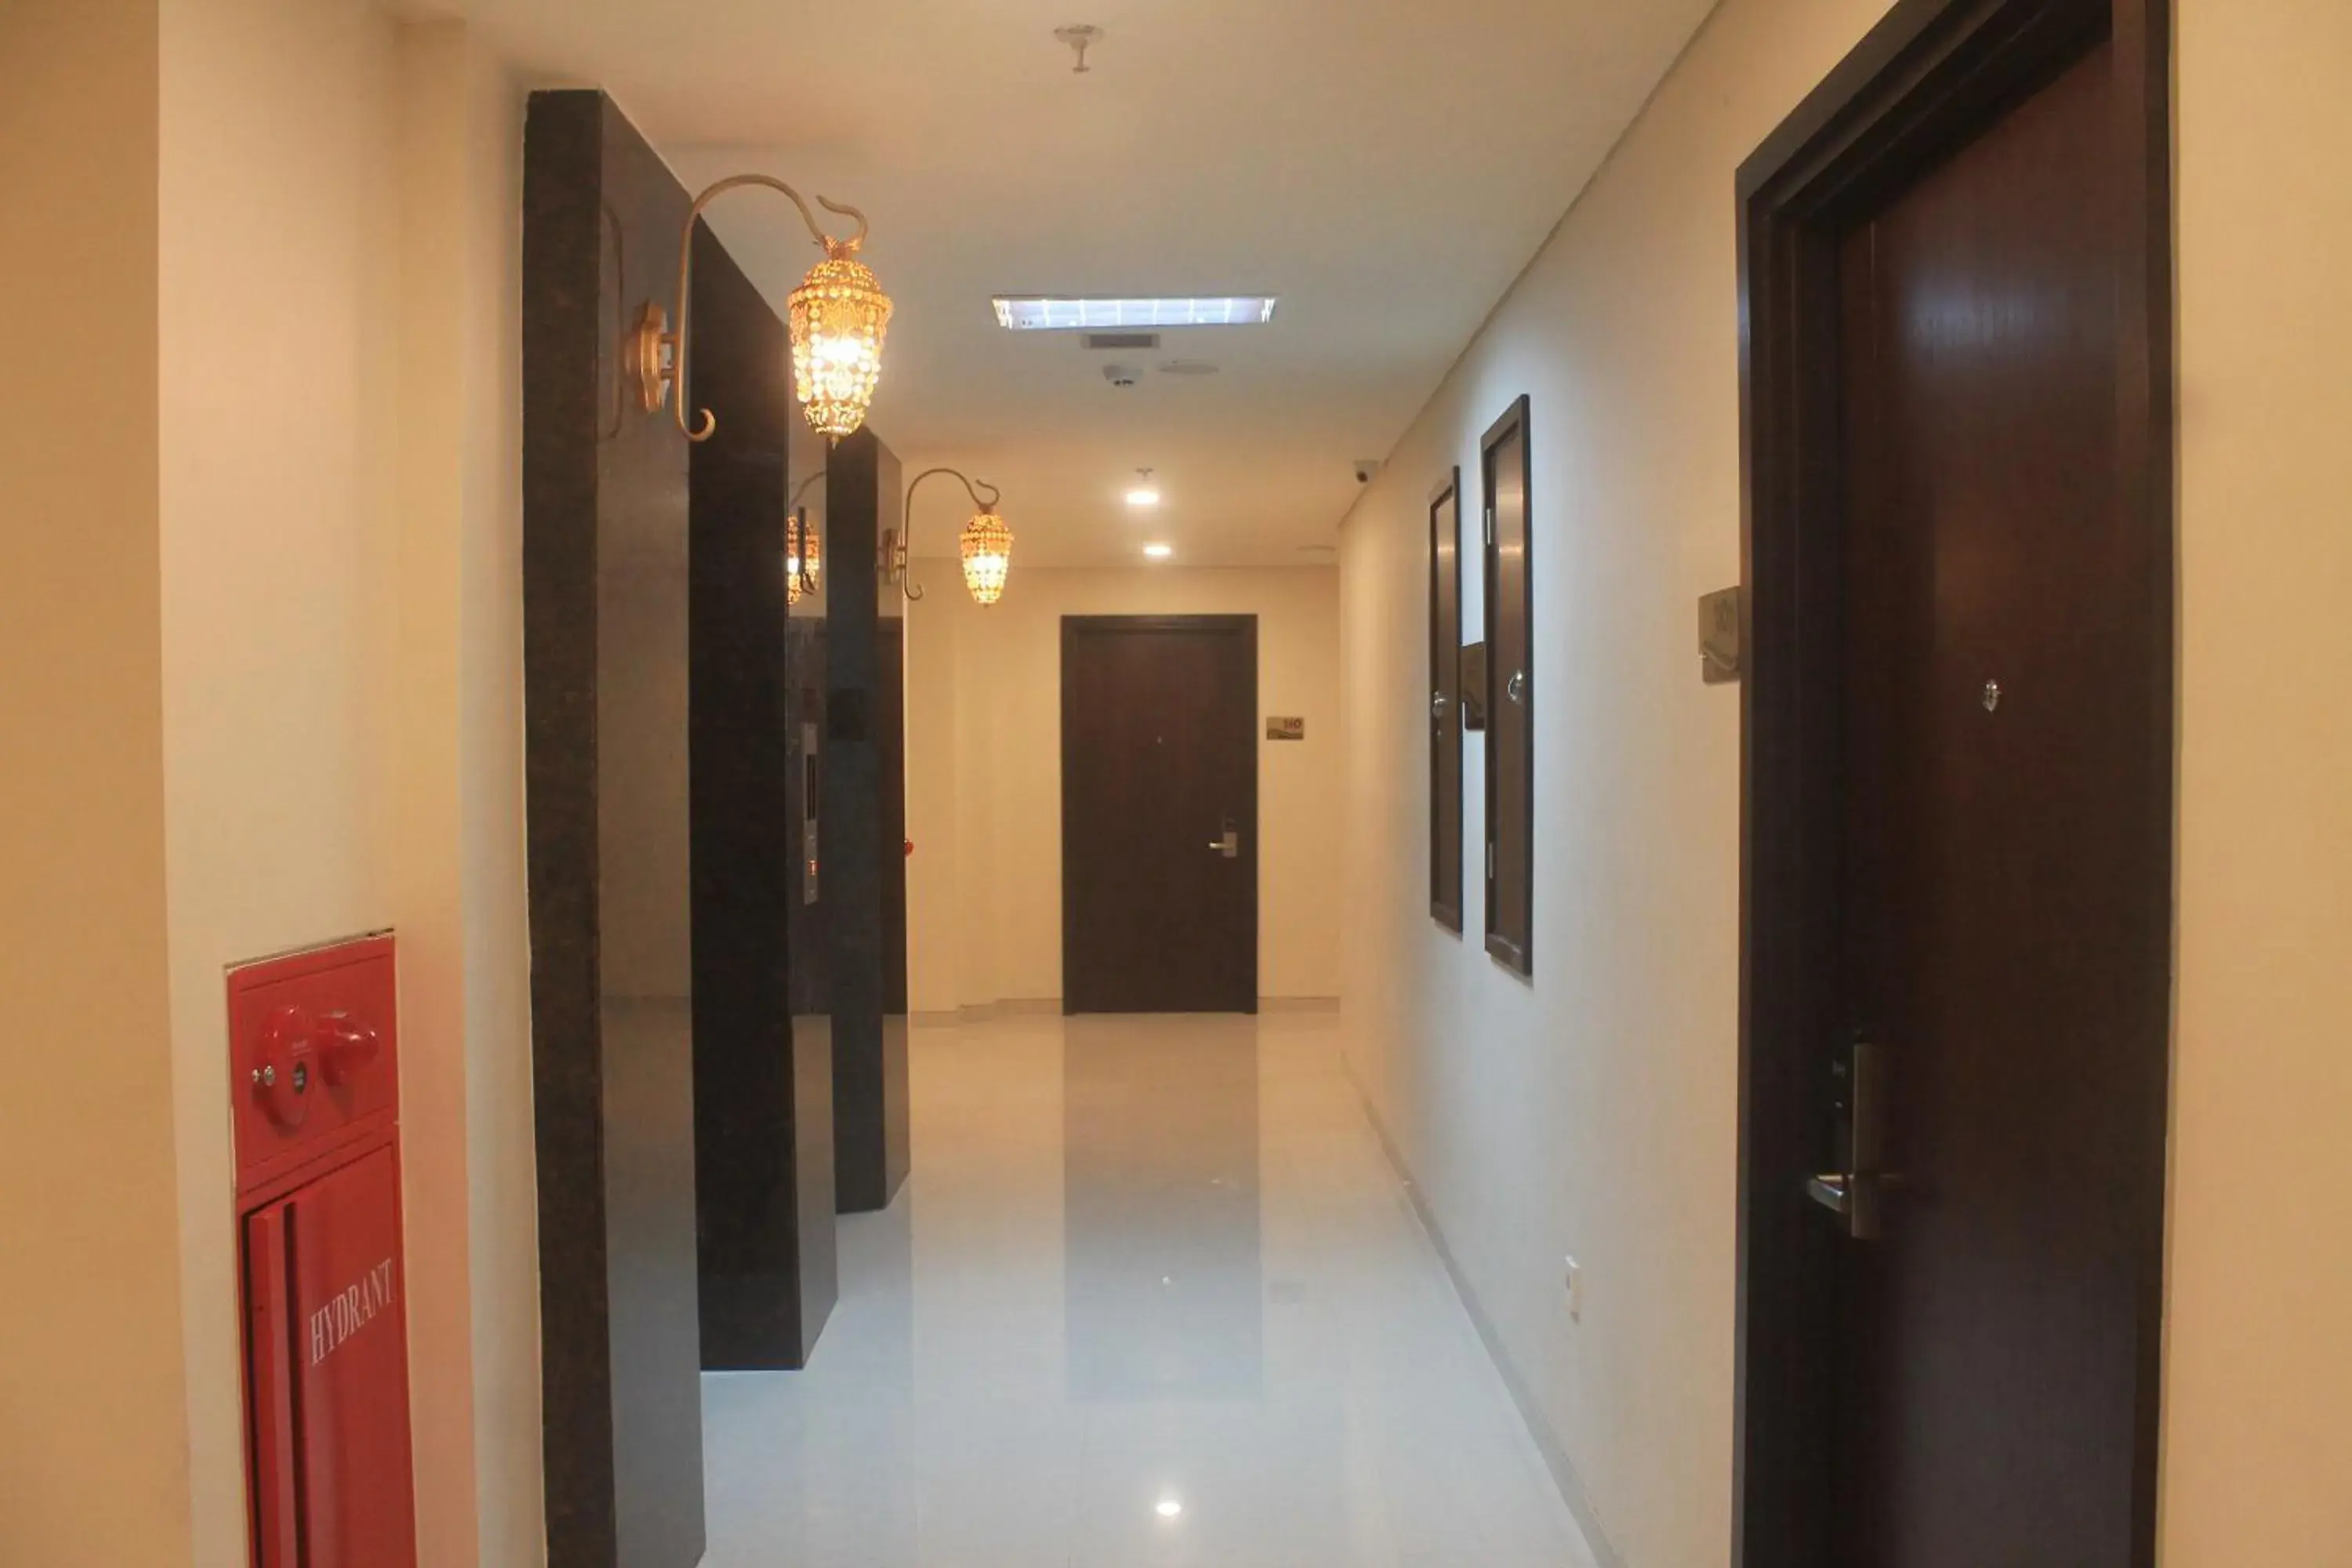 Area and facilities in Namira Syariah Hotel Surabaya